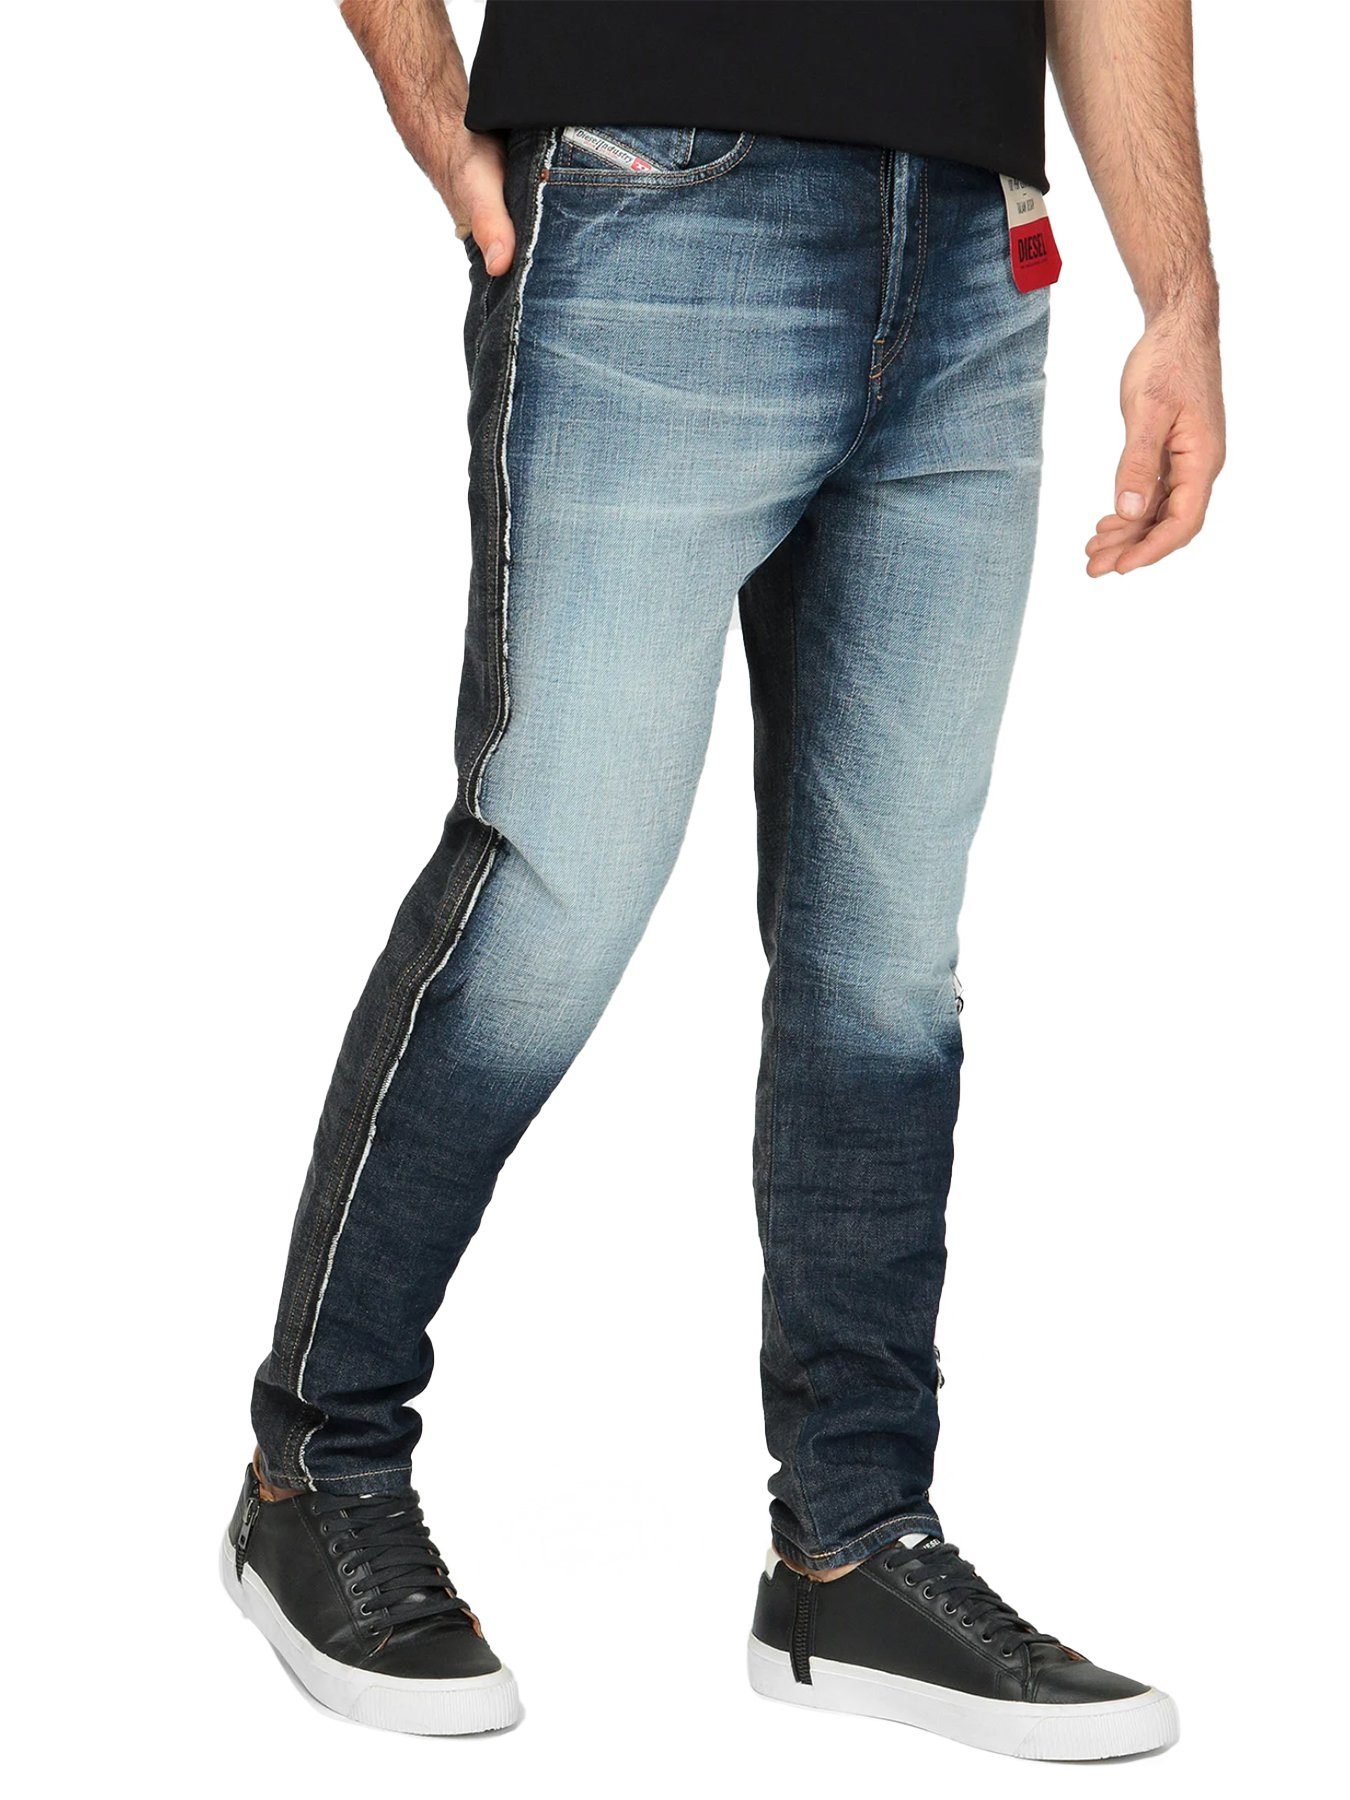 009GR mit Regular Länge:30 Diesel D-Vider tiefem Schritt - - Tapered-fit-Jeans